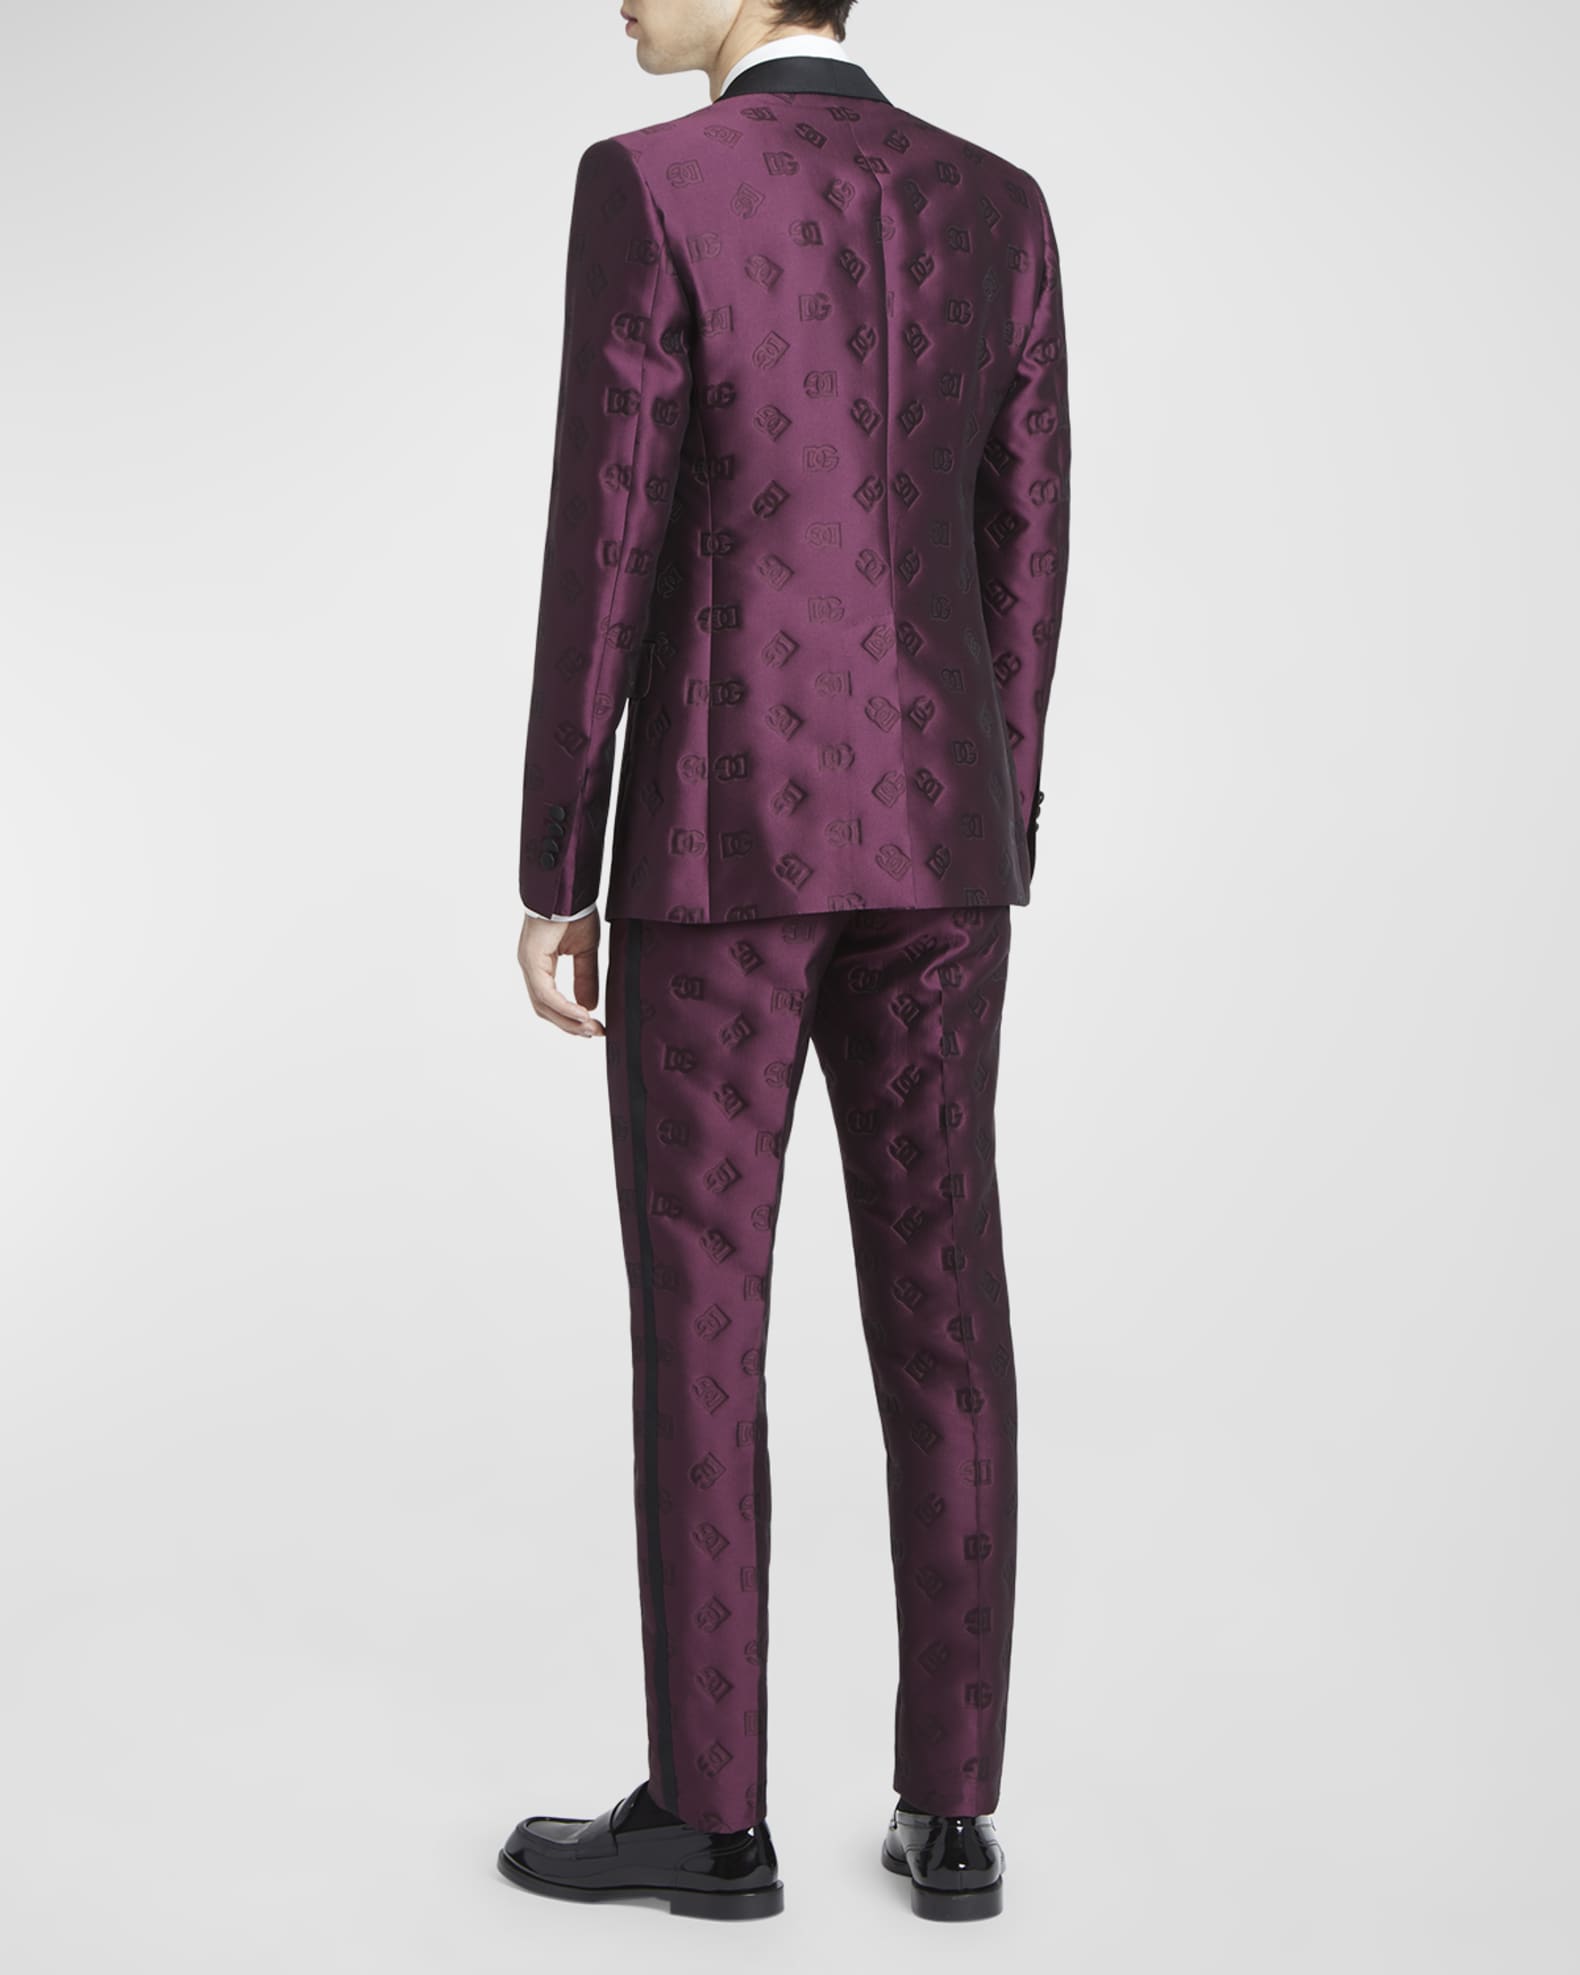 Dolce&Gabbana Men's DG Jacquard Tuxedo | Neiman Marcus